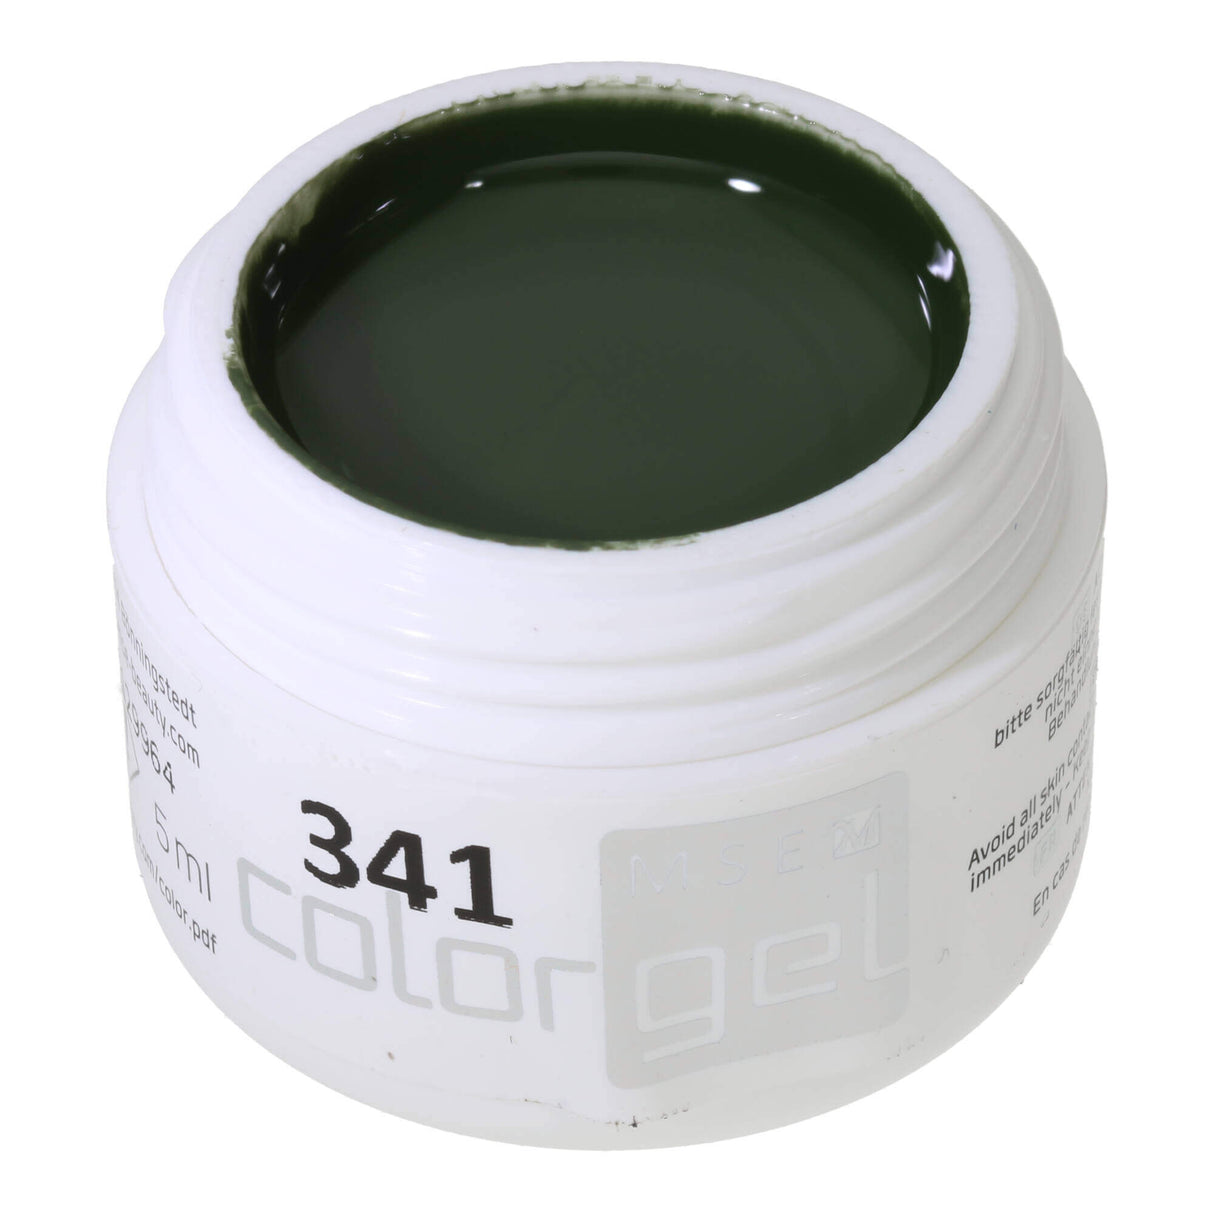 # 341 Premium-PURE Color Gel 5ml Màu xanh lá cây đậm